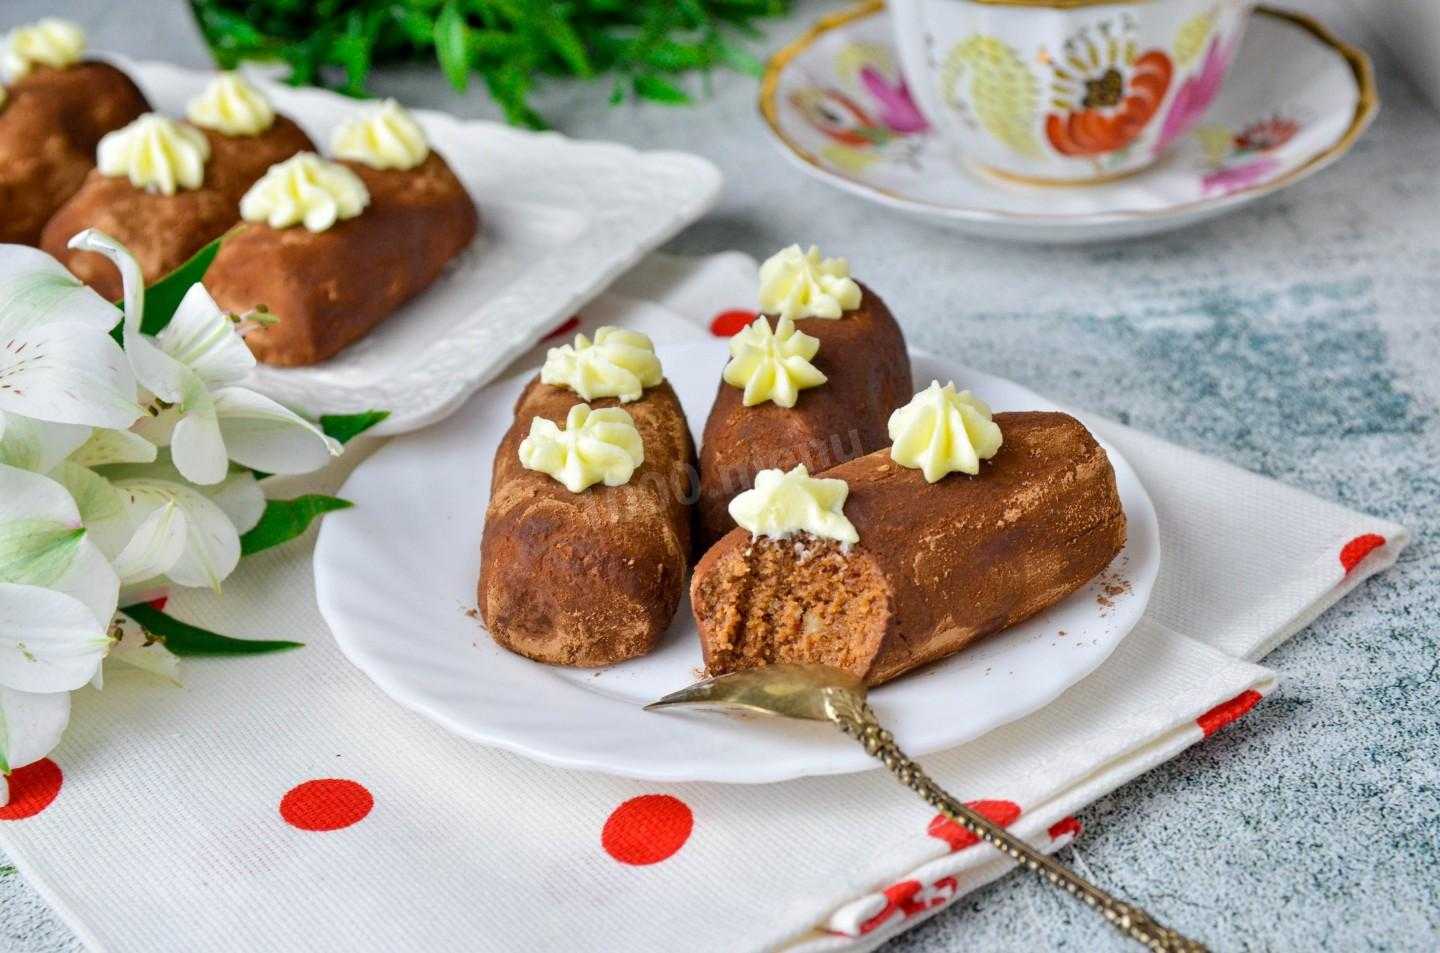 Пирожное из сухарей - 7 рецептов картошки со сгущенкой, орехами